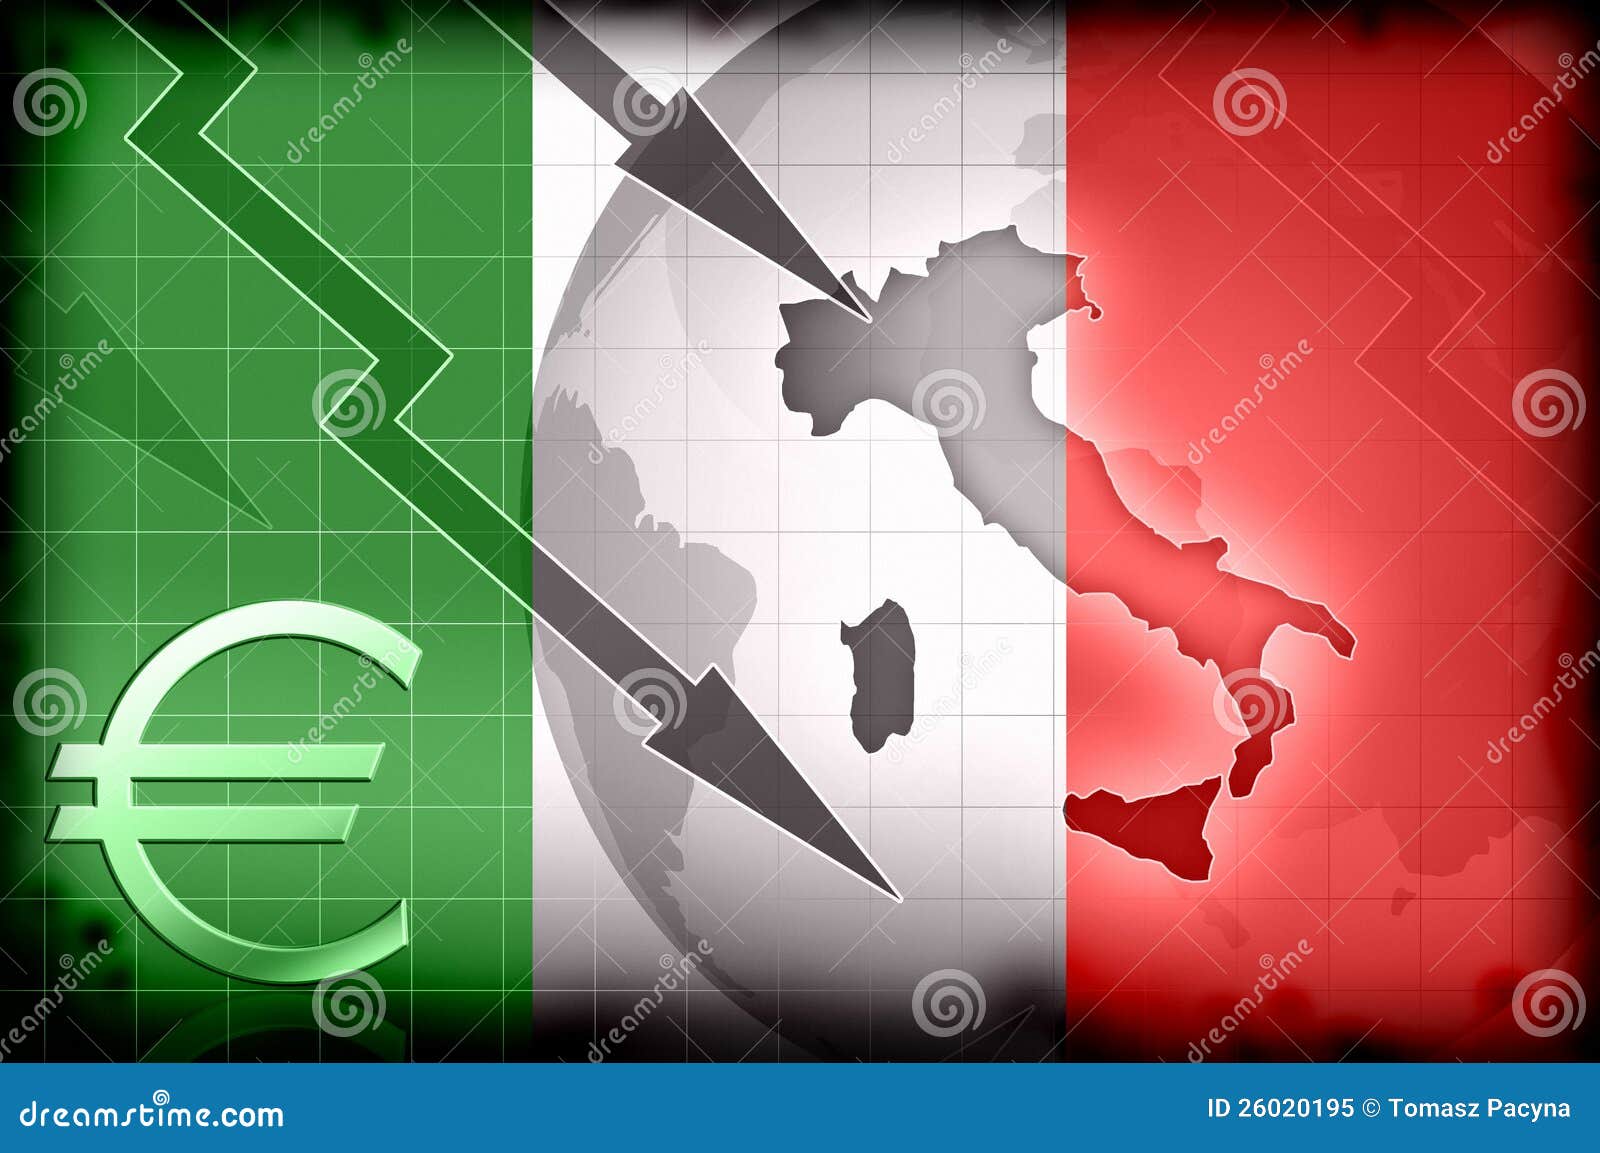 Экономика страны италии. Экономика Италии. Налоговая система Италии. Экономическая ситуация в Италии. Экономический кризис в Италии.